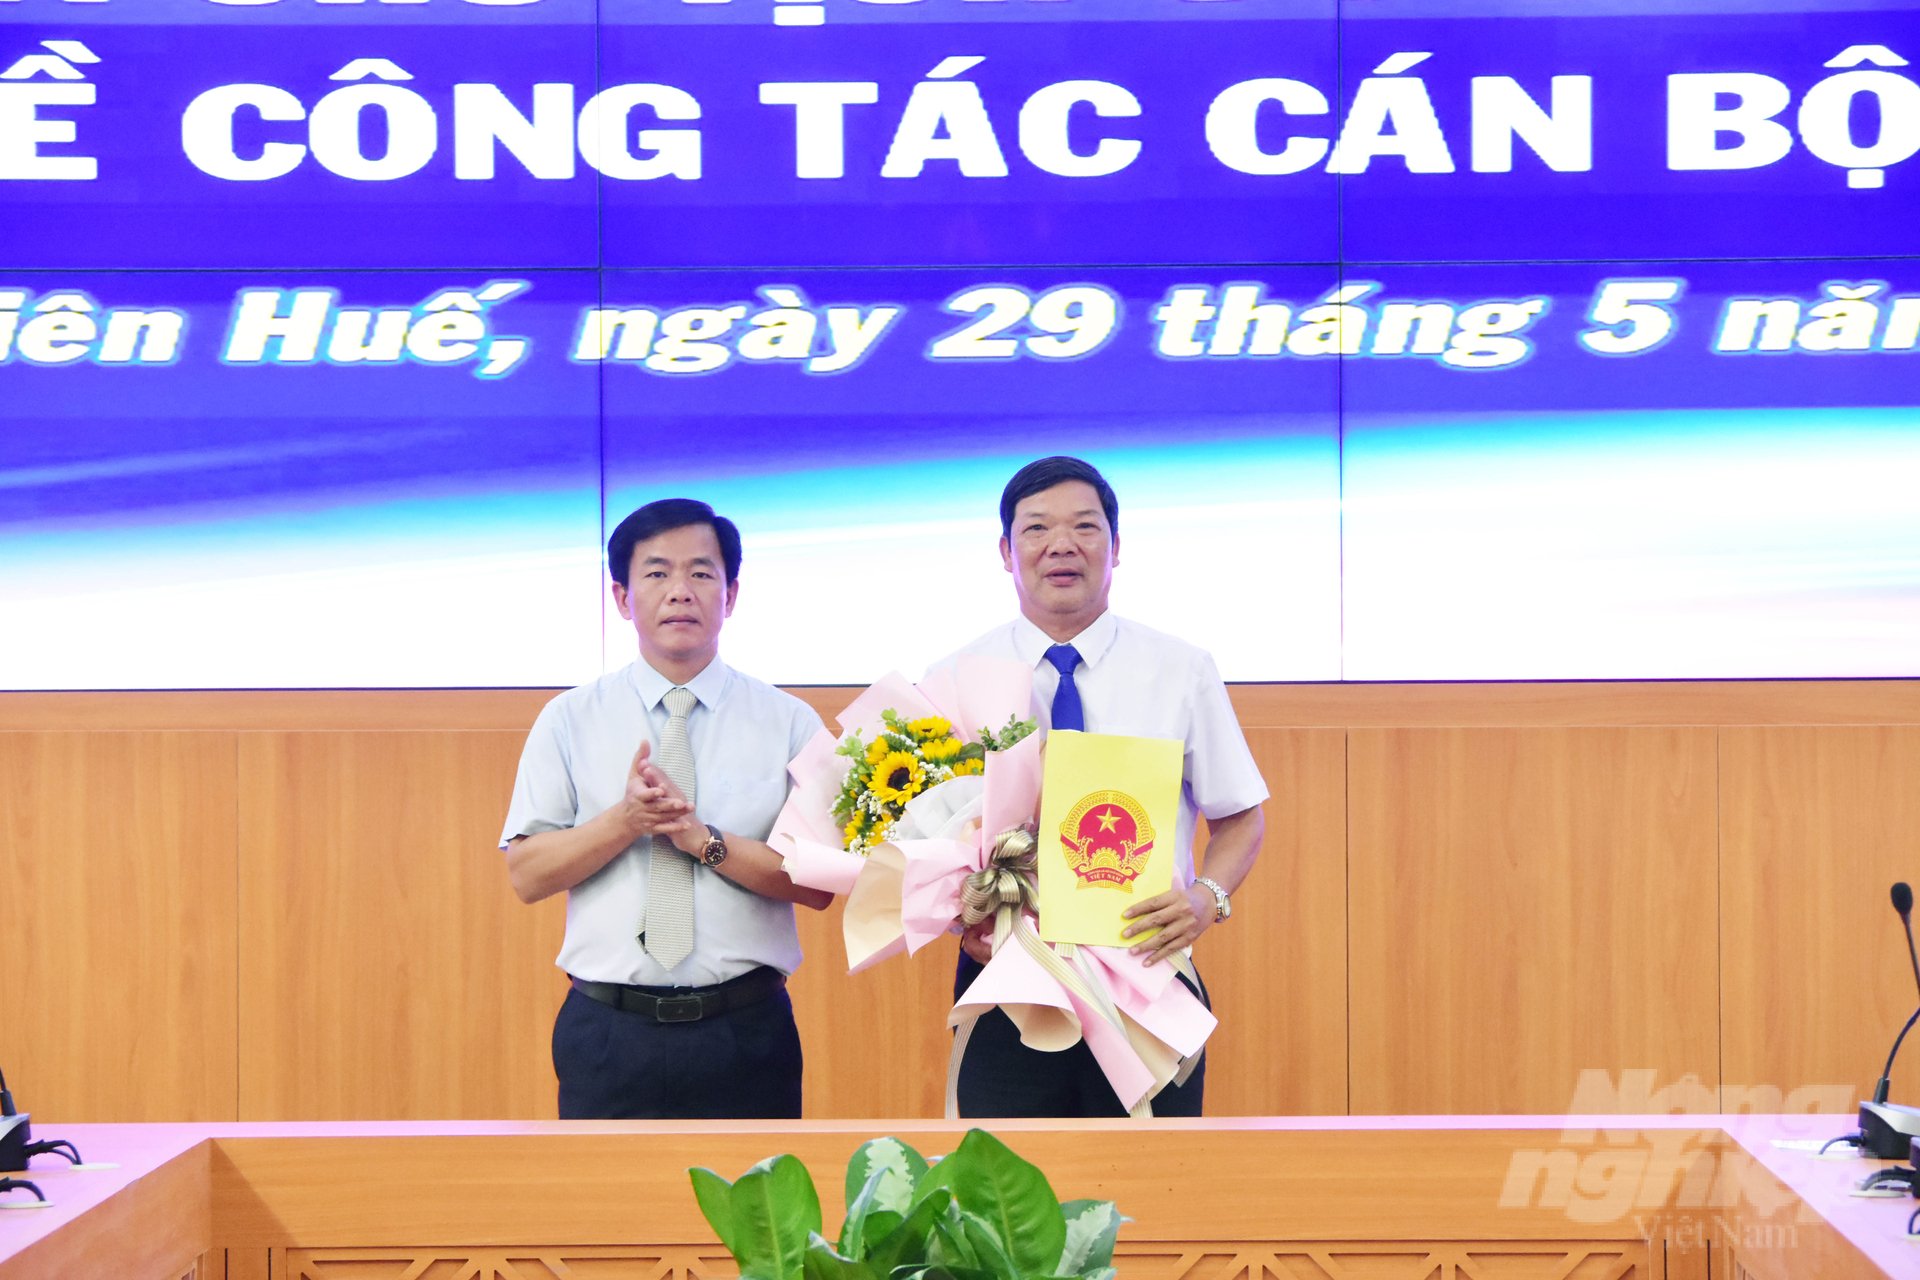 Tân Phó Giám đốc Sở NN-PTNT tỉnh Thừa Thiên - Huế Lê Văn Anh nhận quyết định bổ nhiệm. Ảnh: CĐ.